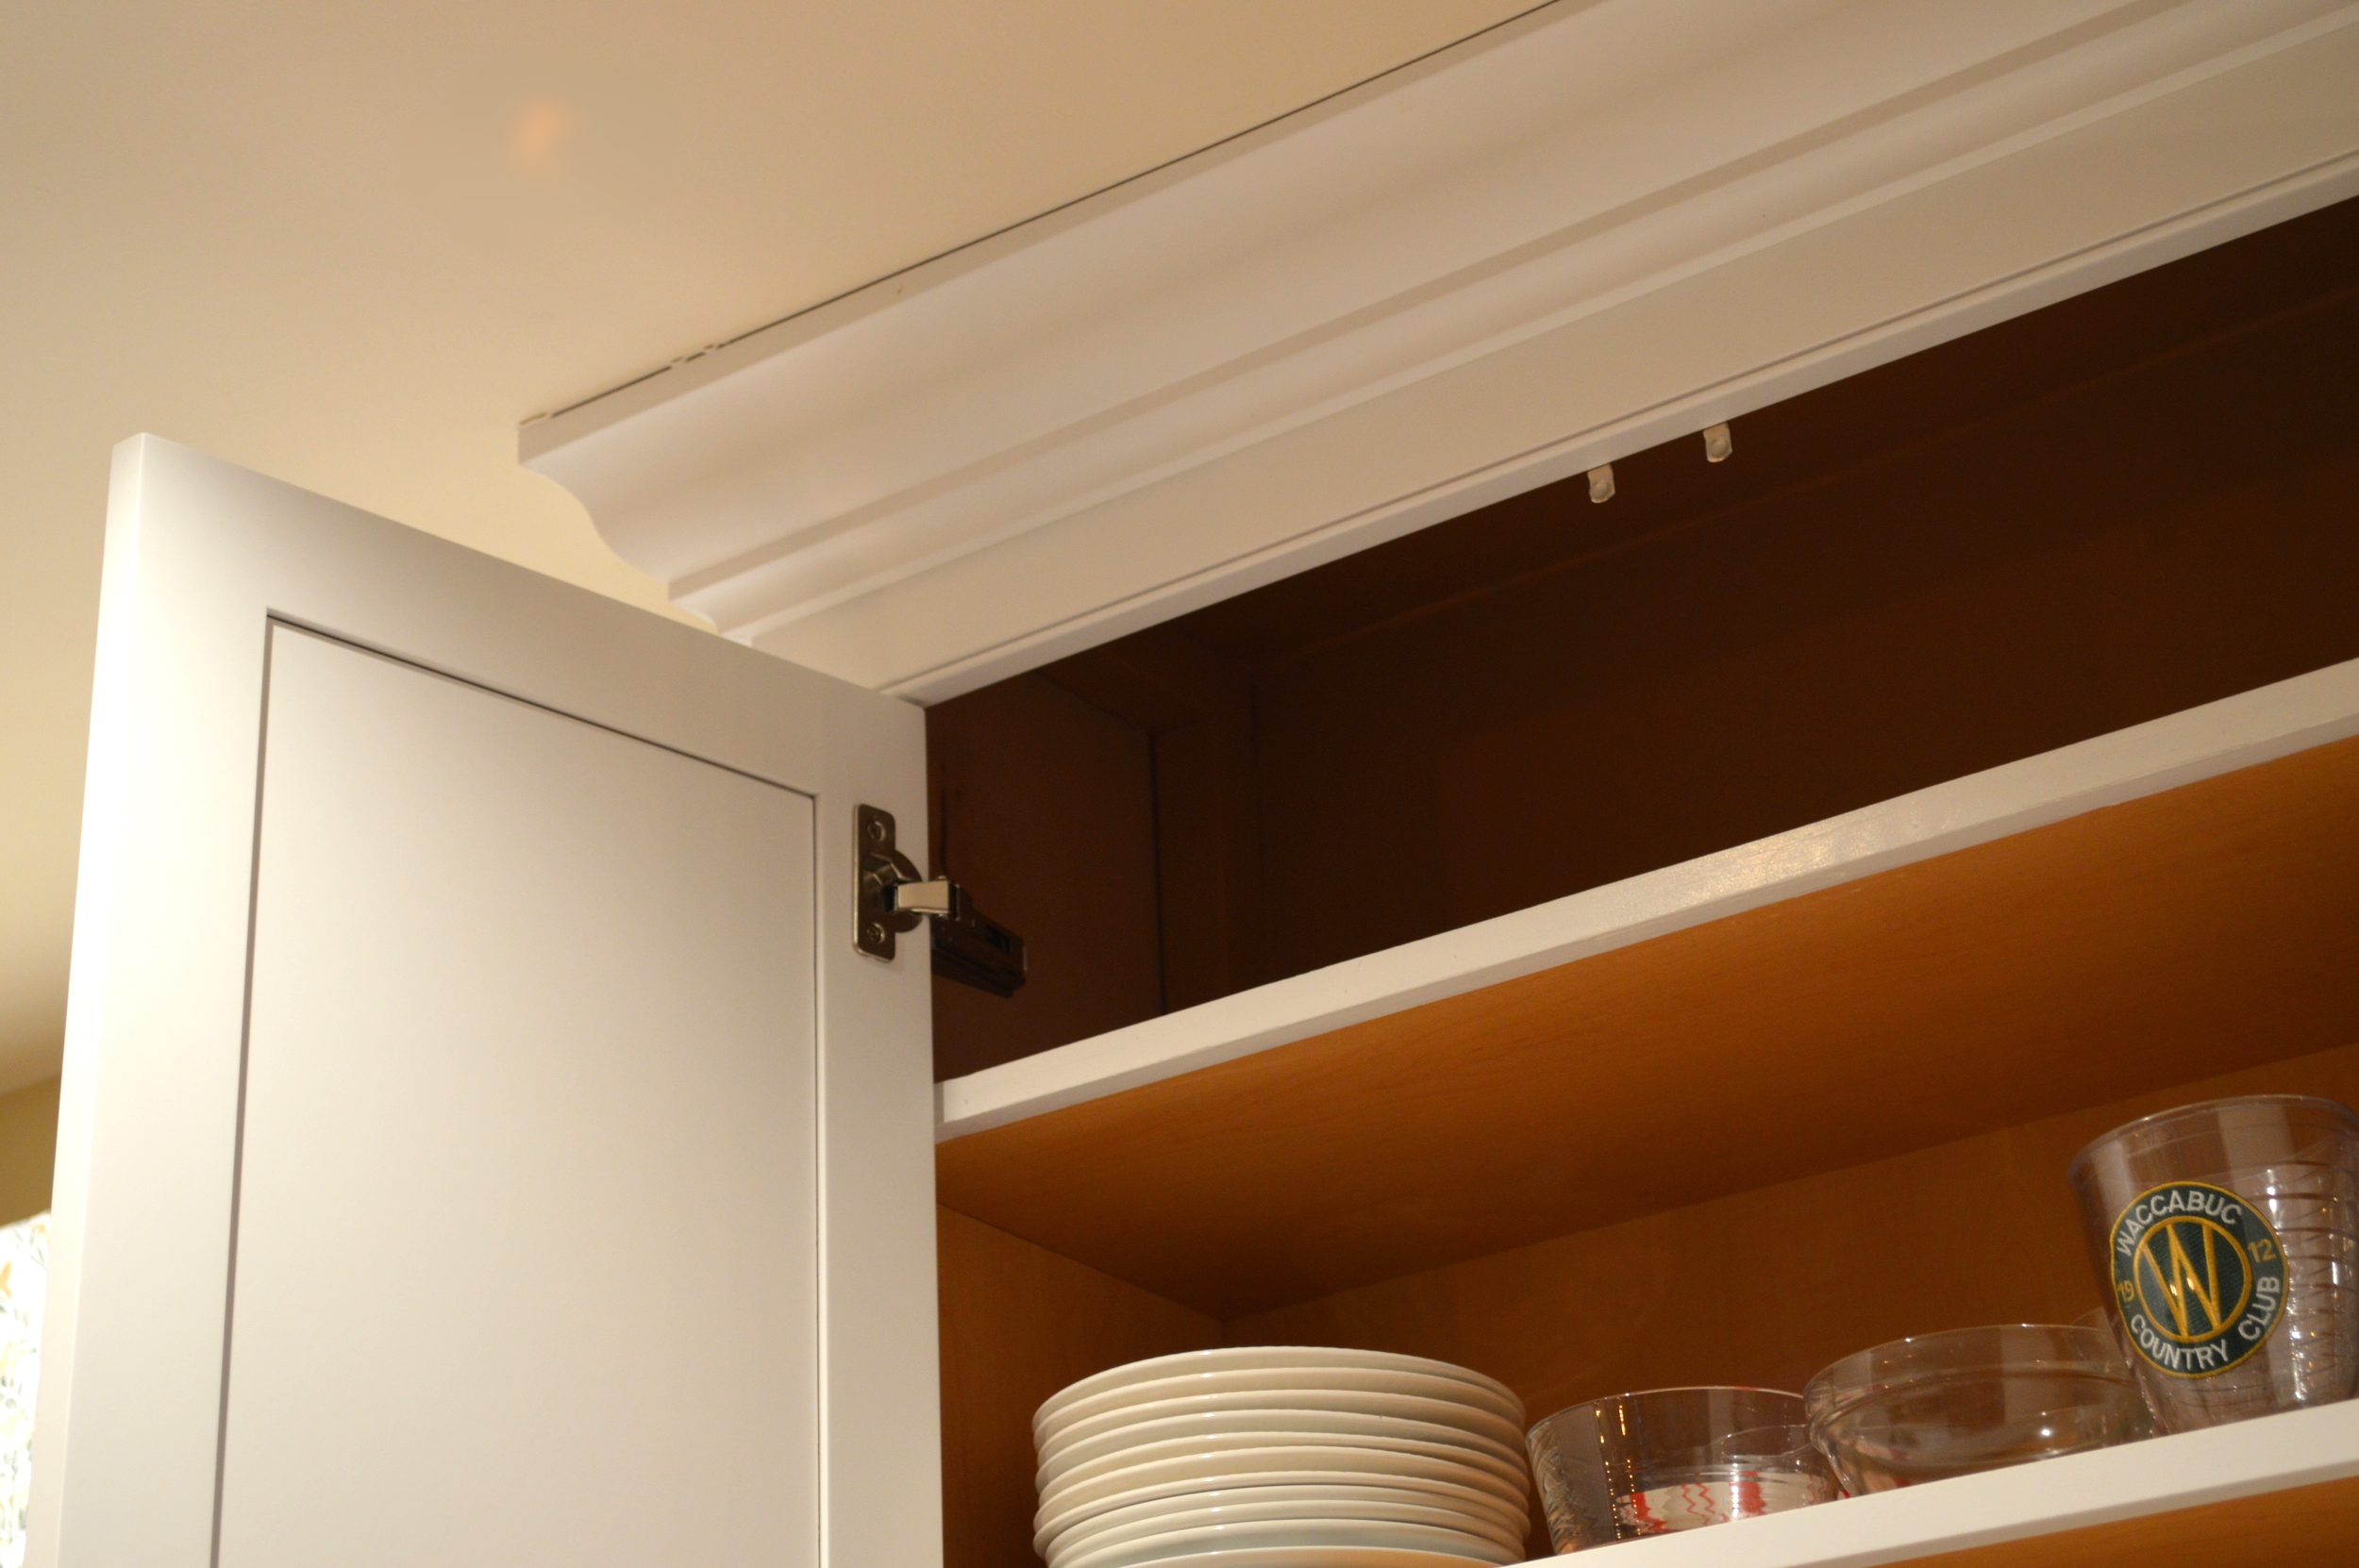 亚博让球平天花板高度的厨房壁柜